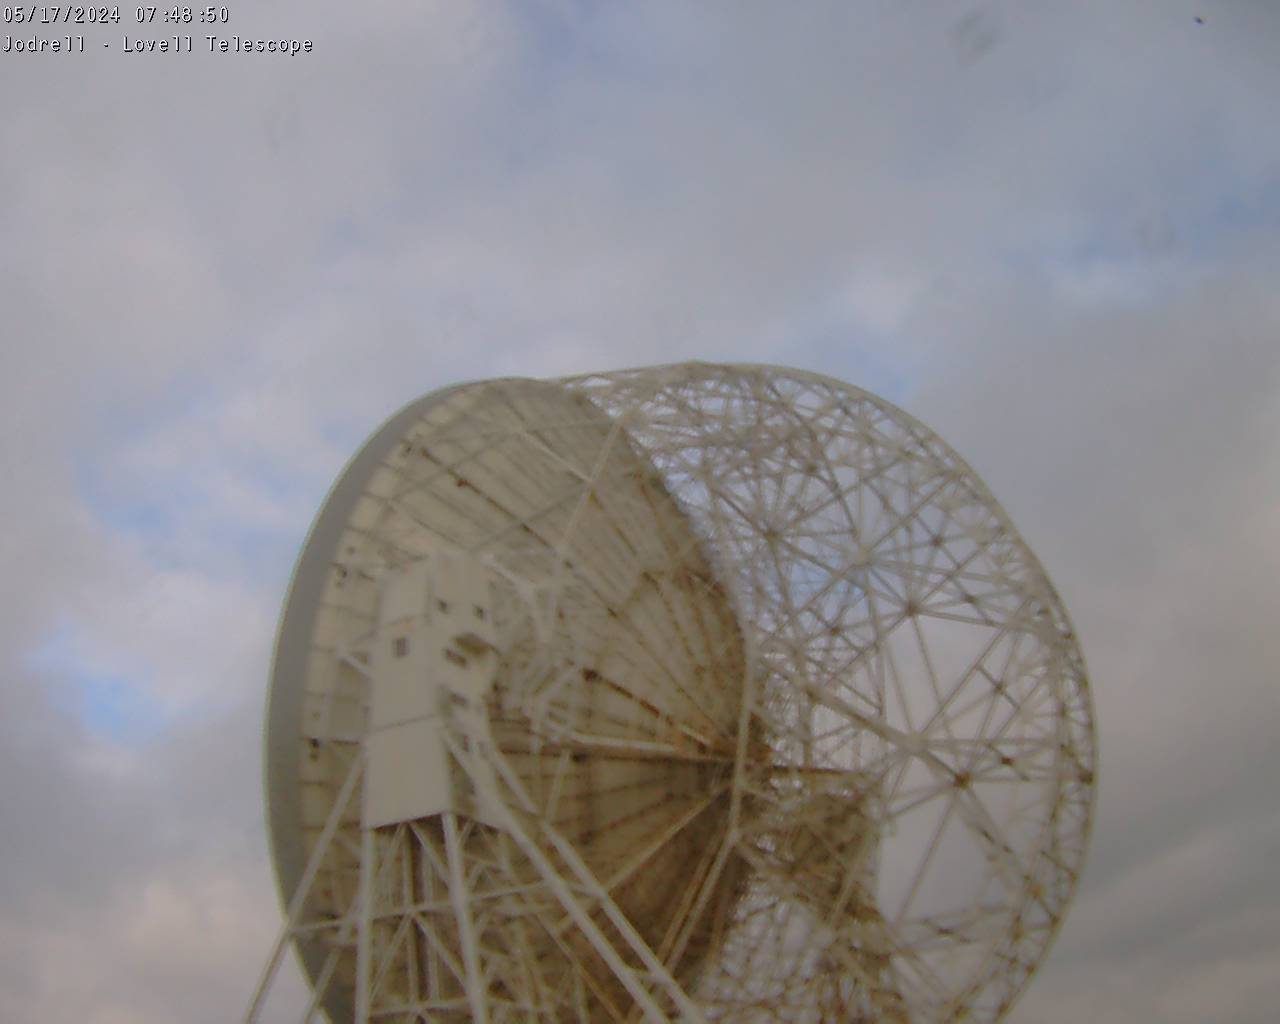 Observatorio Jodrell Bank Sáb. 07:49